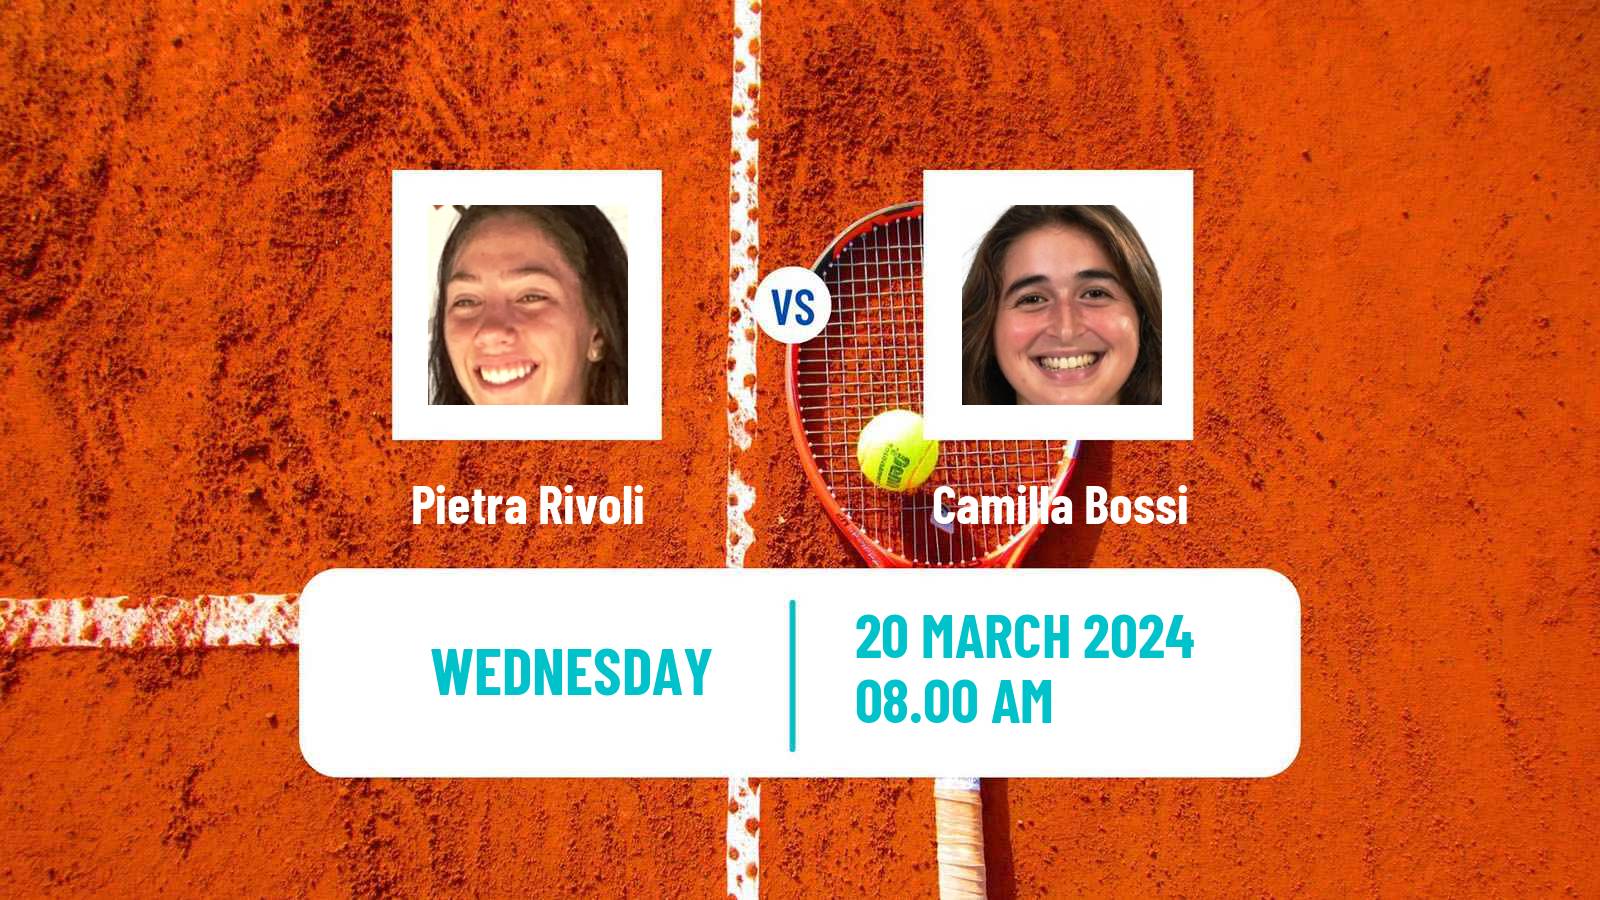 Tennis ITF W15 Campinas Women Pietra Rivoli - Camilla Bossi